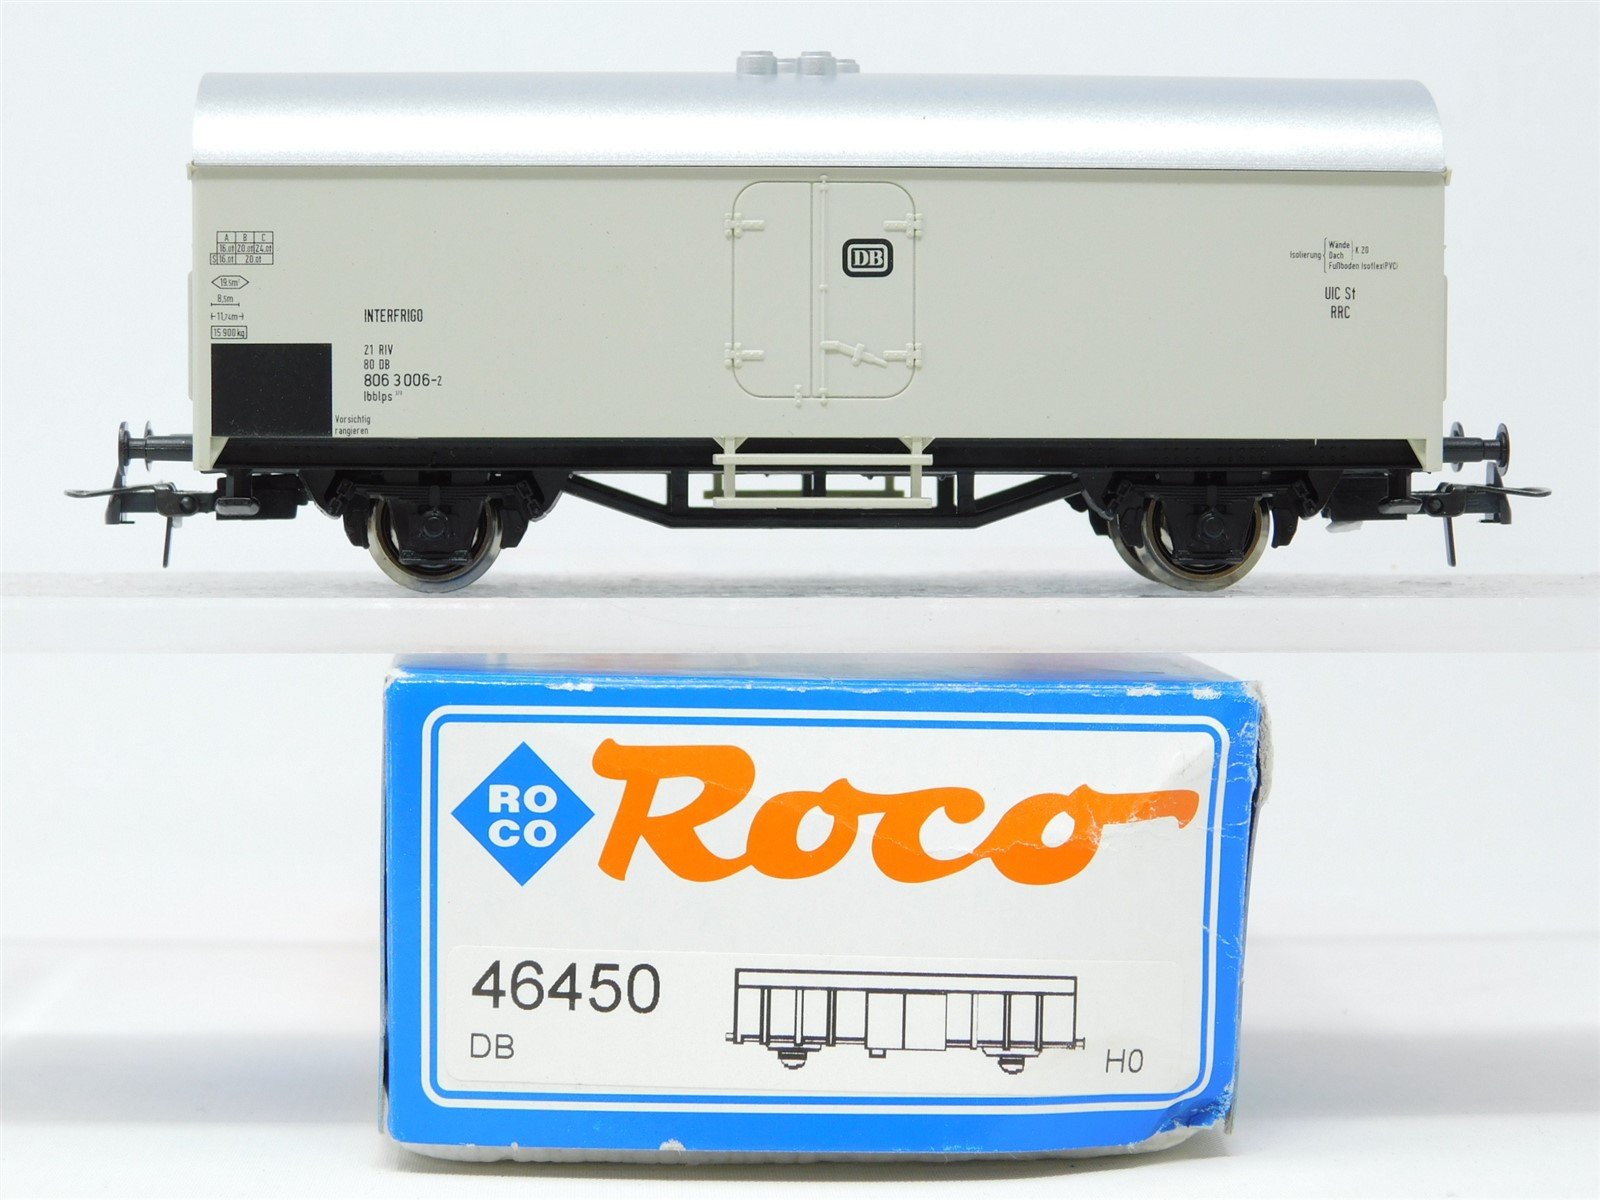 HO Scale Roco 46450 DB German Federal Interfrigo Reefer #006-2